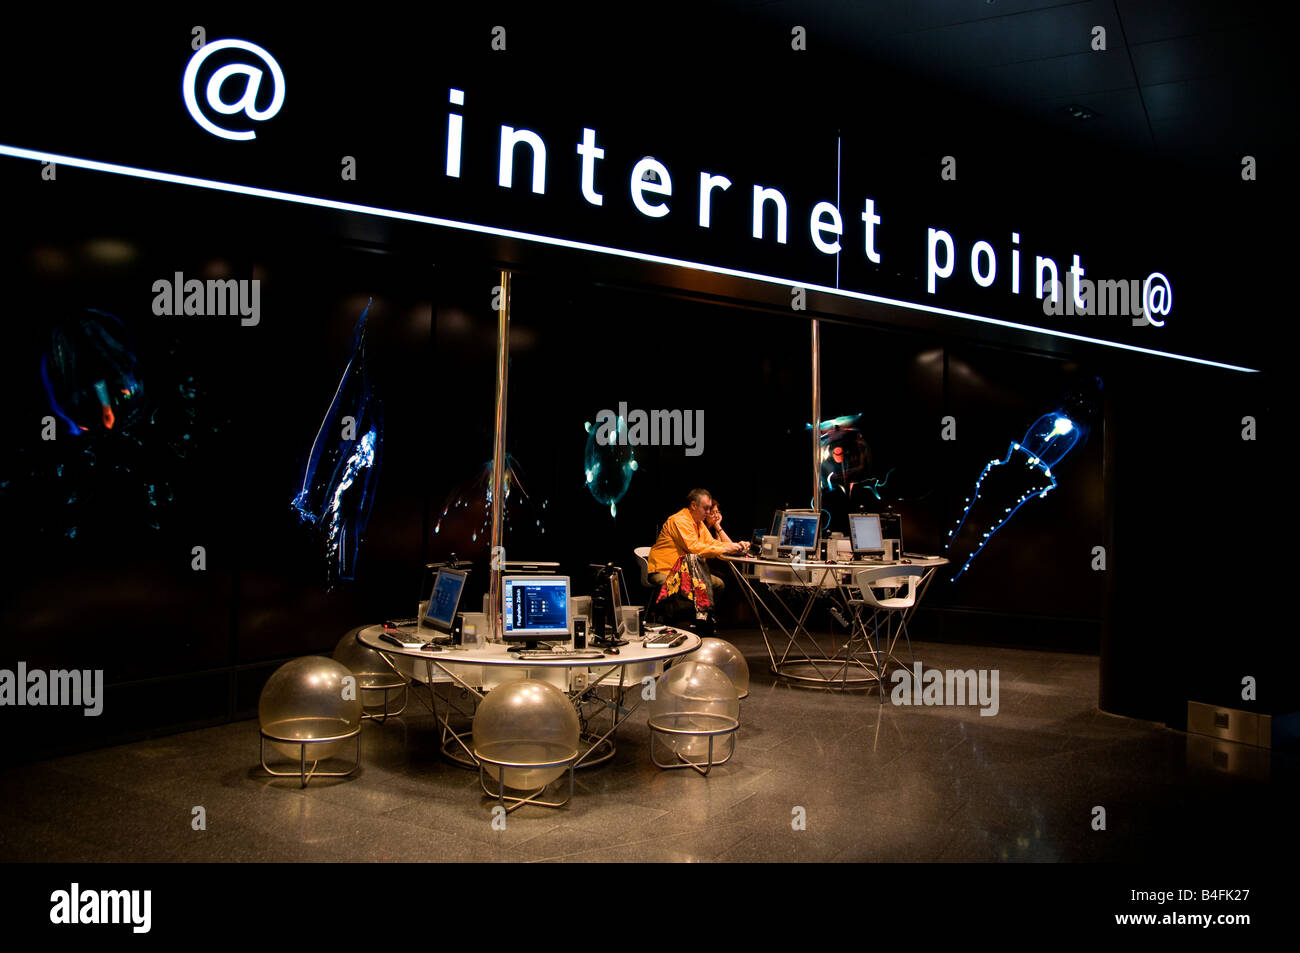 Internet Point Zurich Switzerland Swiss Airport Stock Photo